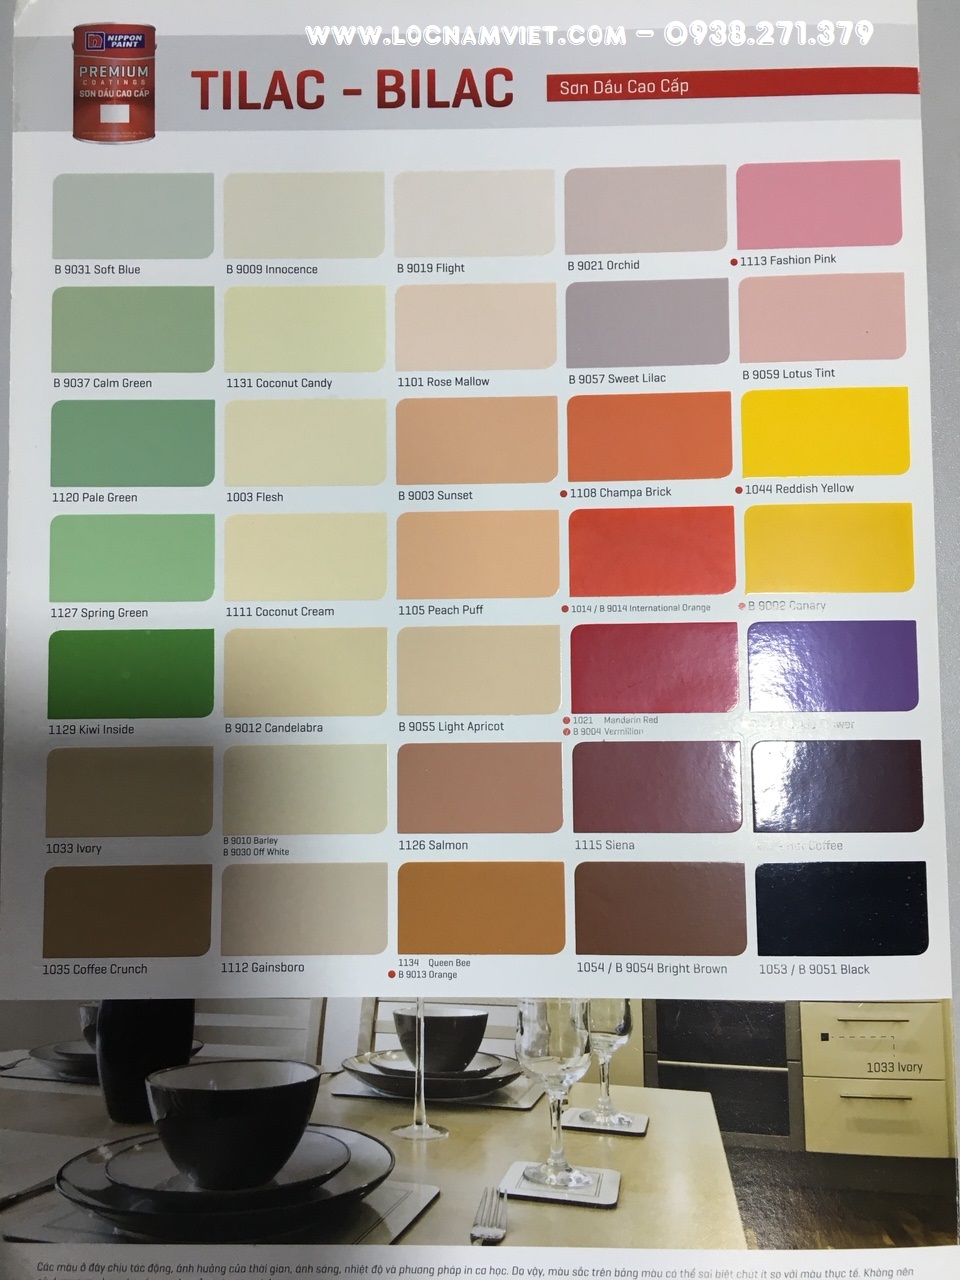 TILAC - thương hiệu sơn nội thất cao cấp hàng đầu tại Việt Nam với những sản phẩm sơn đạt tiêu chuẩn chất lượng cao nhất cùng với màu sắc đa dạng và thiết kế đẹp mắt. Hình ảnh TILAC sẽ cho bạn niềm tin và đánh giá cao hơn về sản phẩm mà chúng tôi mang lại cho khách hàng.